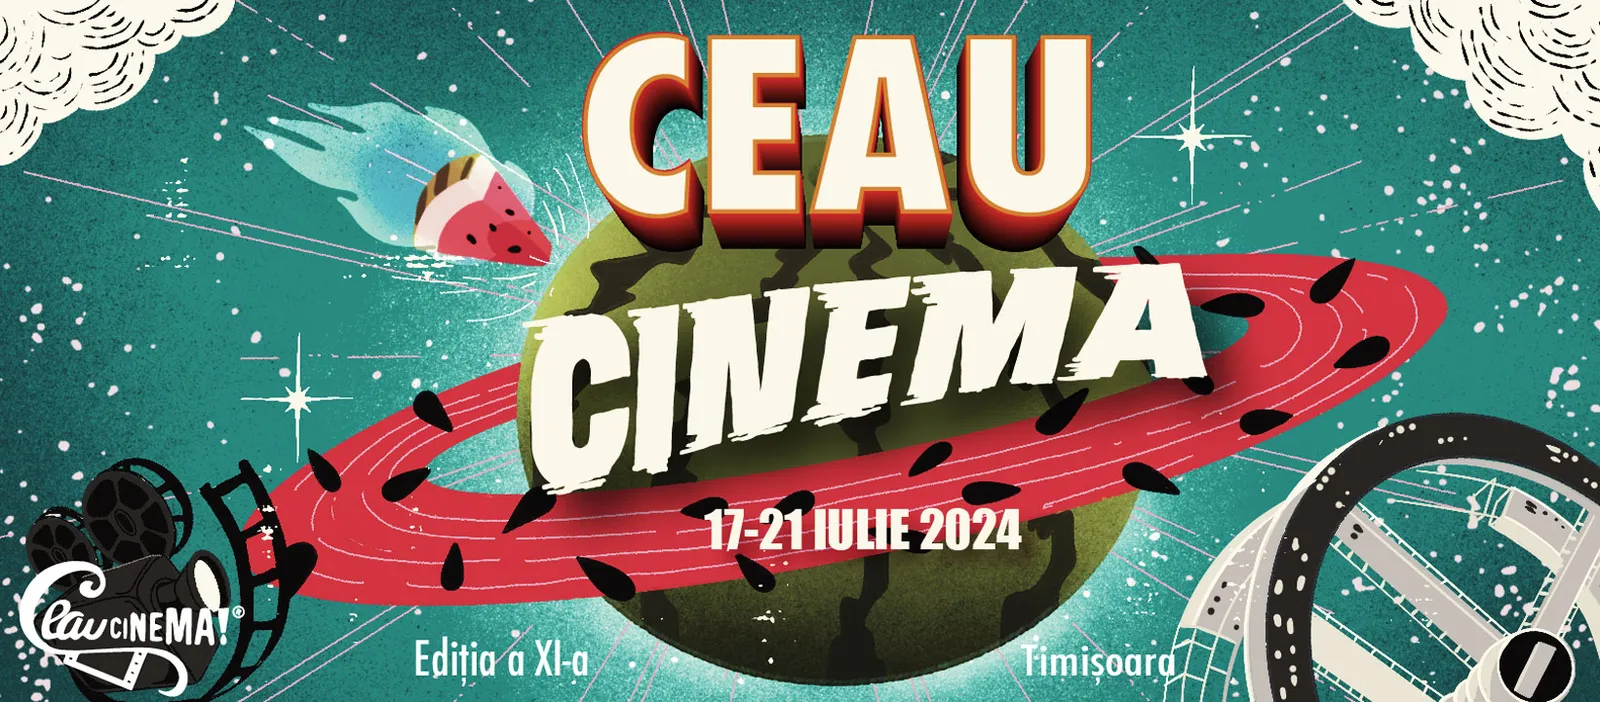 Festivalul de Film Ceau, Cinema! Ediția a 11-a